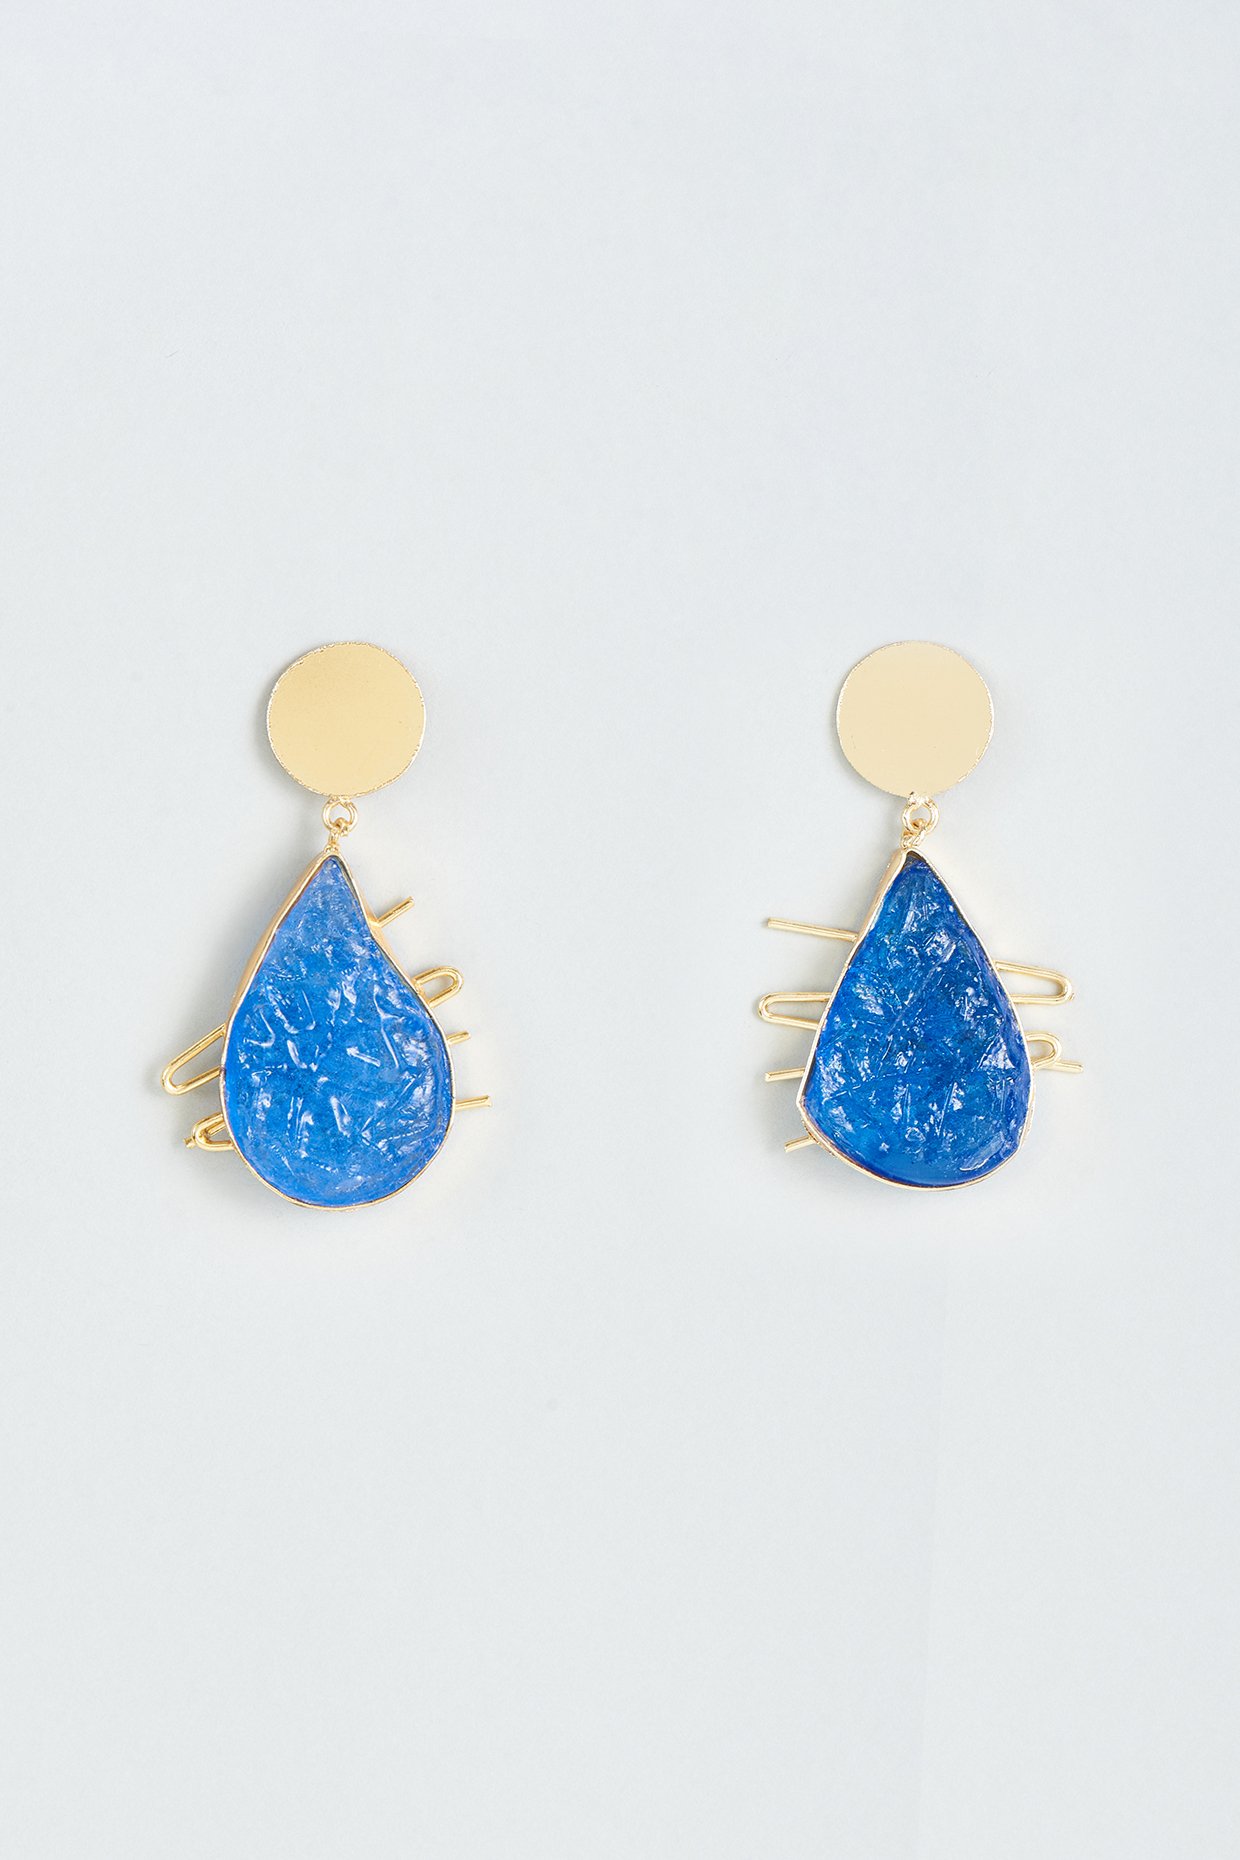 Earrings - Buy 2100+ Diamond & Gold Earring Designs Online | BlueStone |  Online earrings, Stud earrings, Earrings